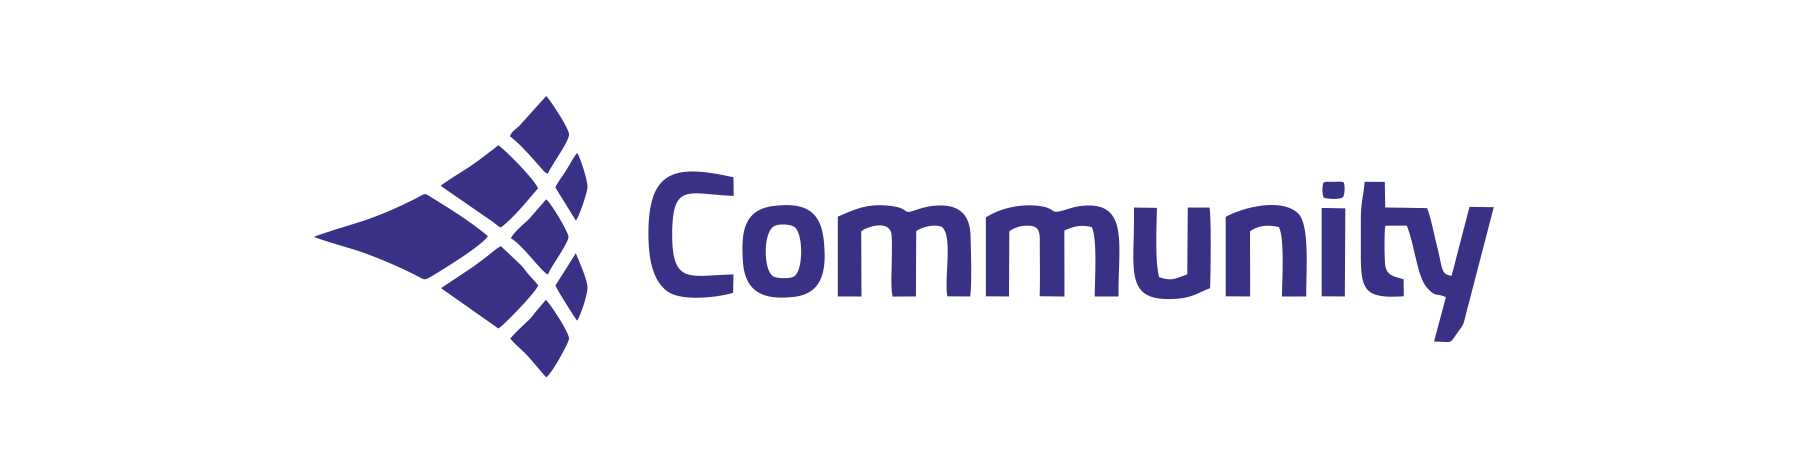 community speaker brand logos traced